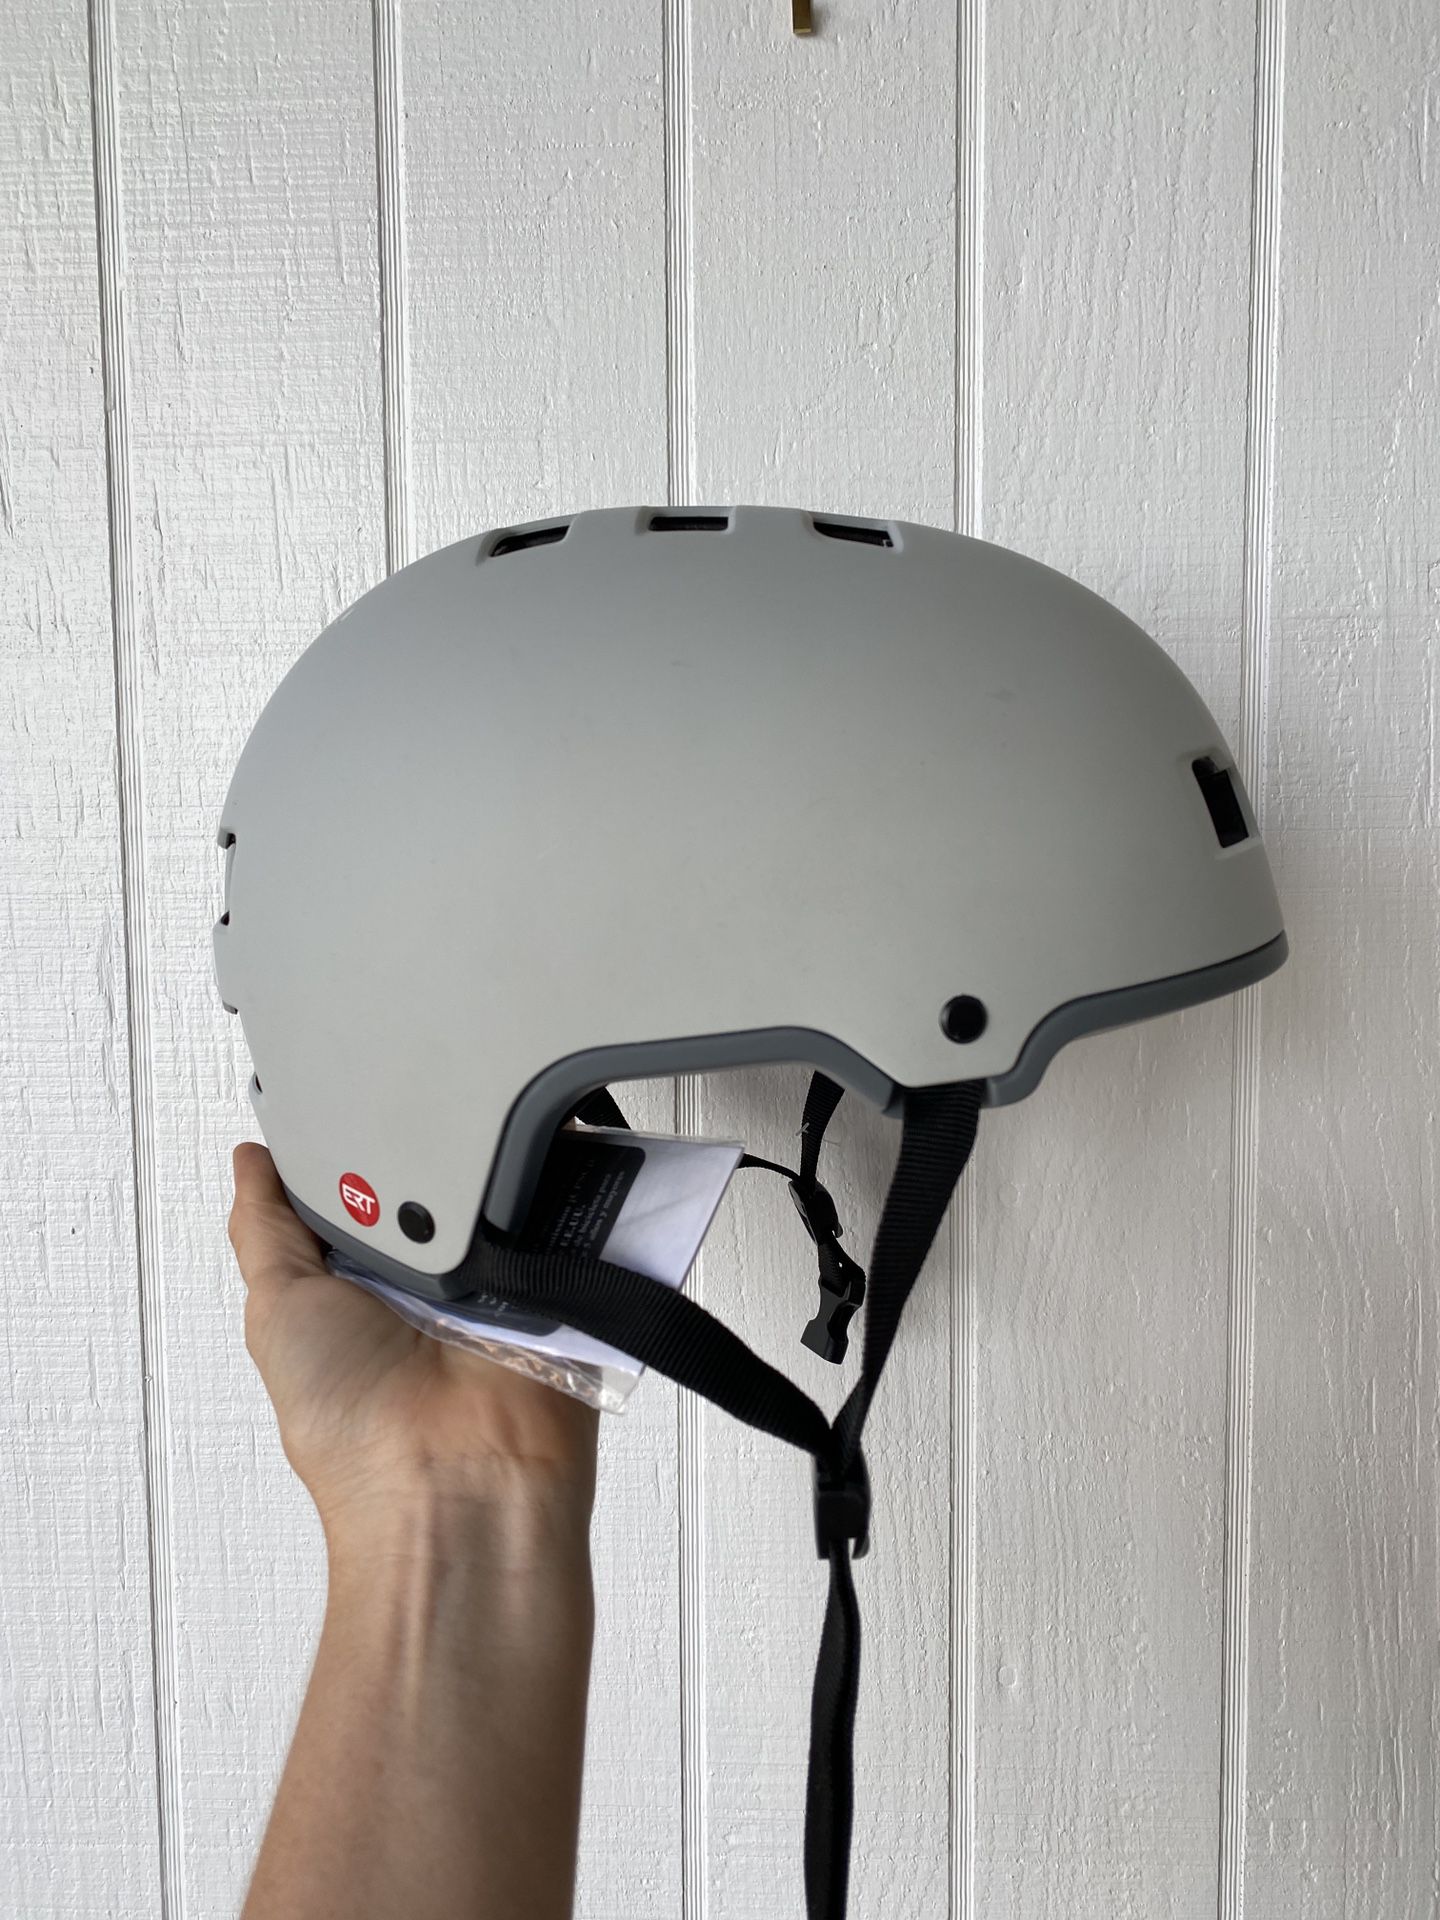 Schwinn ERT Sequel Bike Helmet